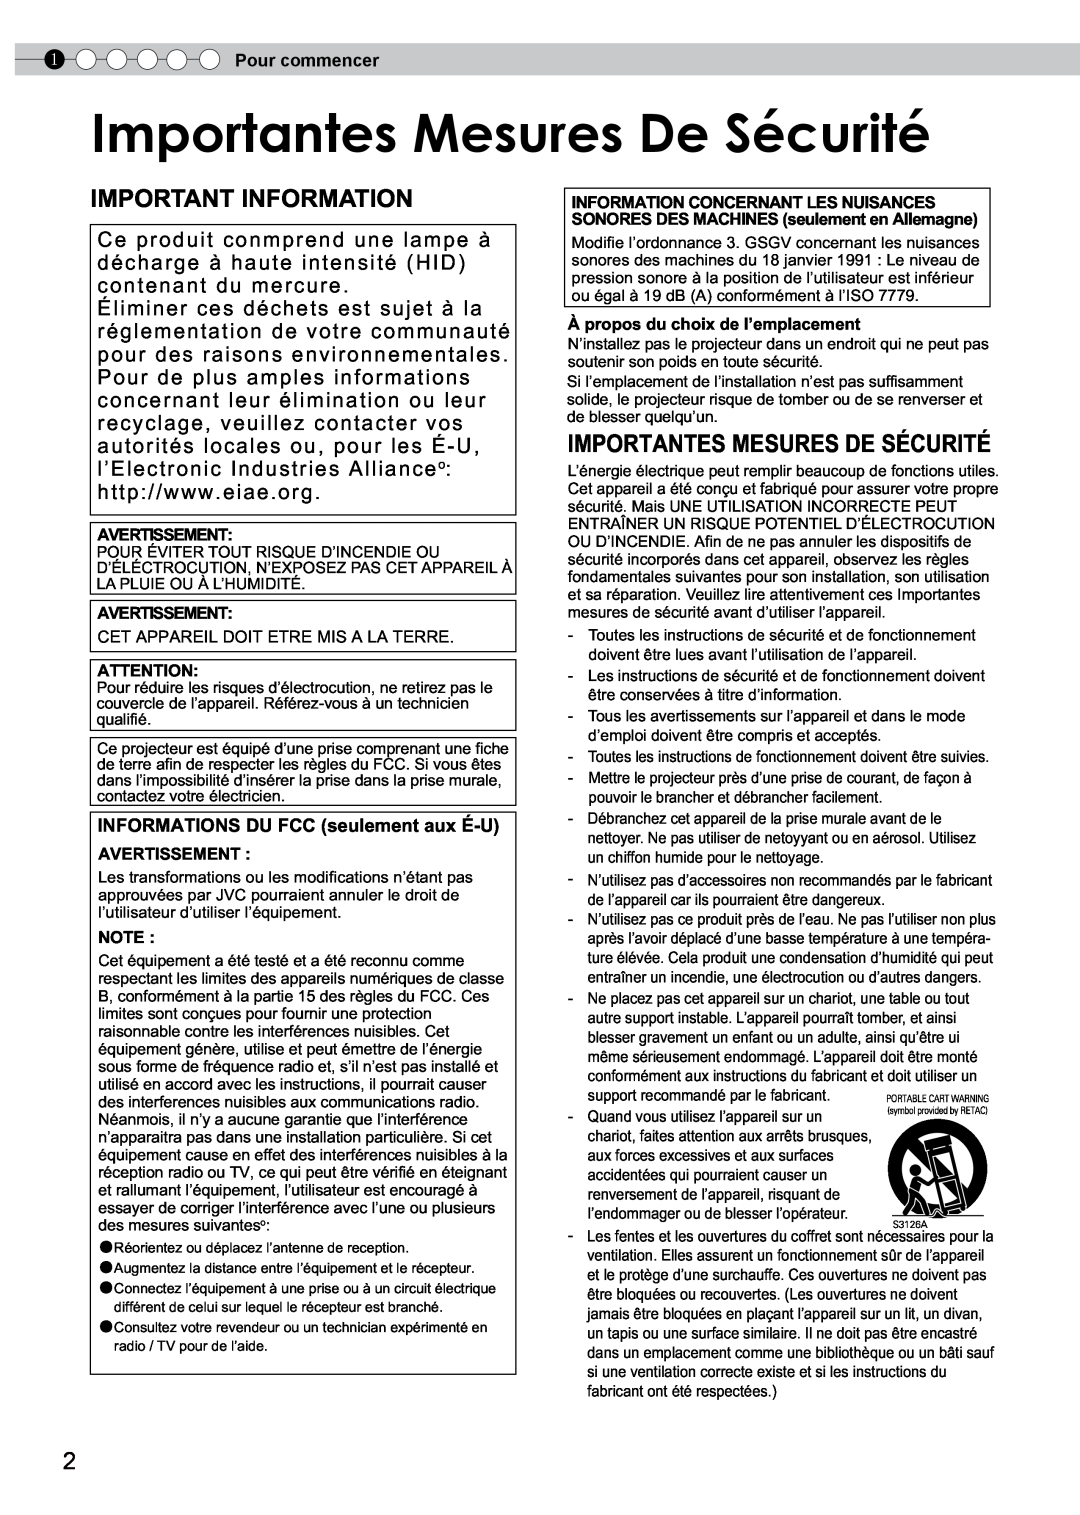 JVC PB006596599-0 manual Importantesportantes MesuresMesuresDeDeSécuritéSécurité, Importantes Mesures De Sécurité 